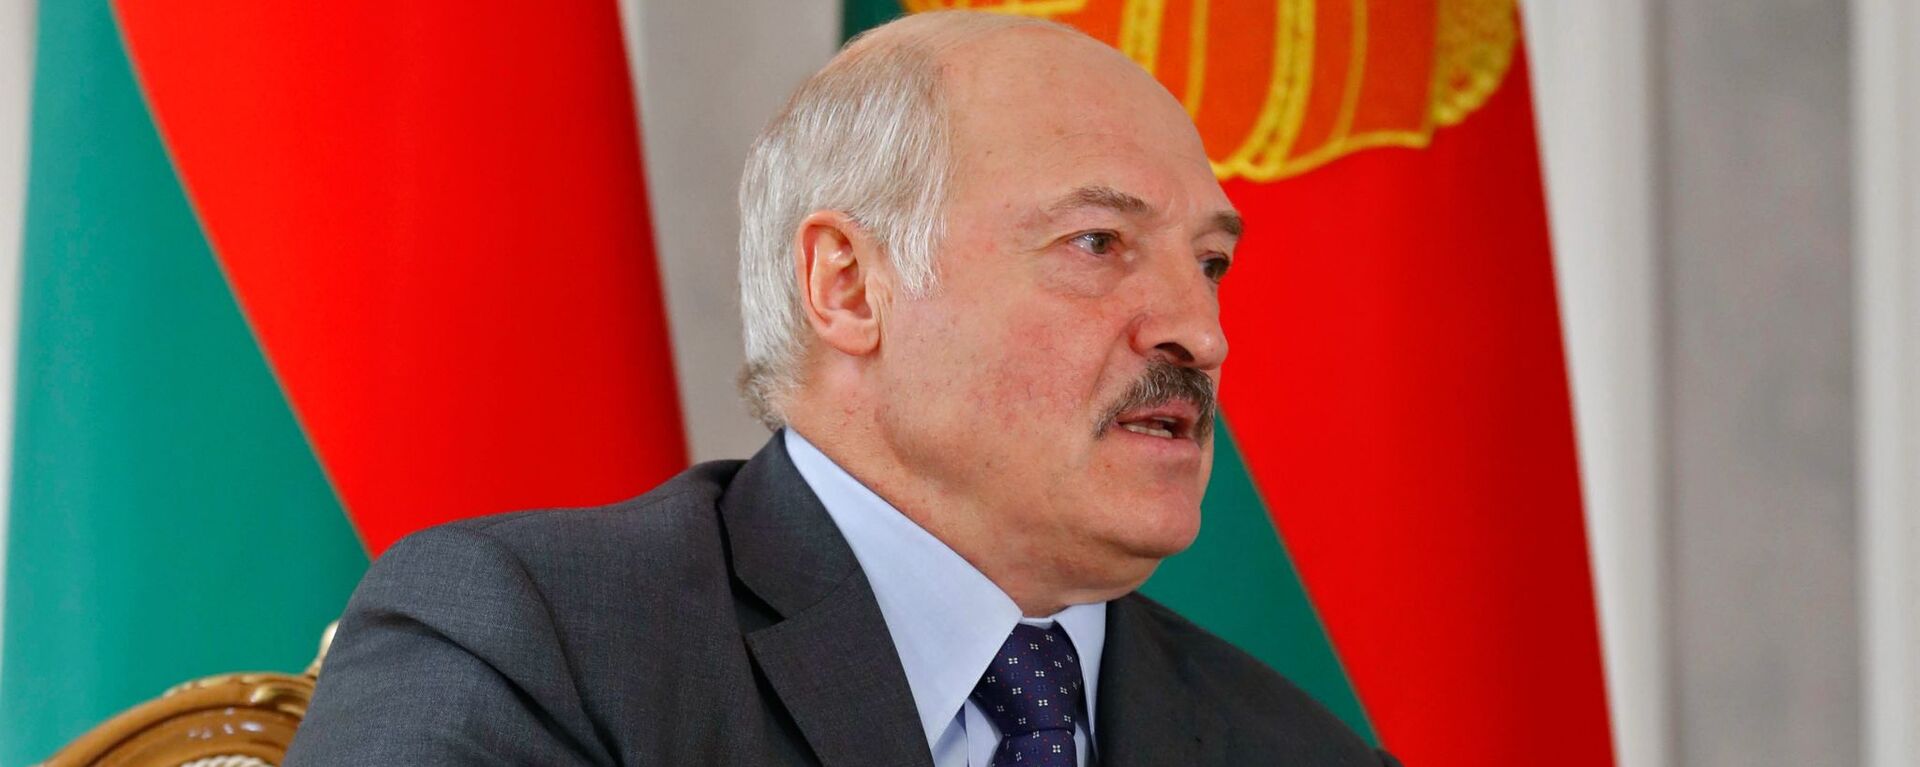 Alexandr Lukashenko, presidente de Bielorrusia - Sputnik Mundo, 1920, 02.12.2021